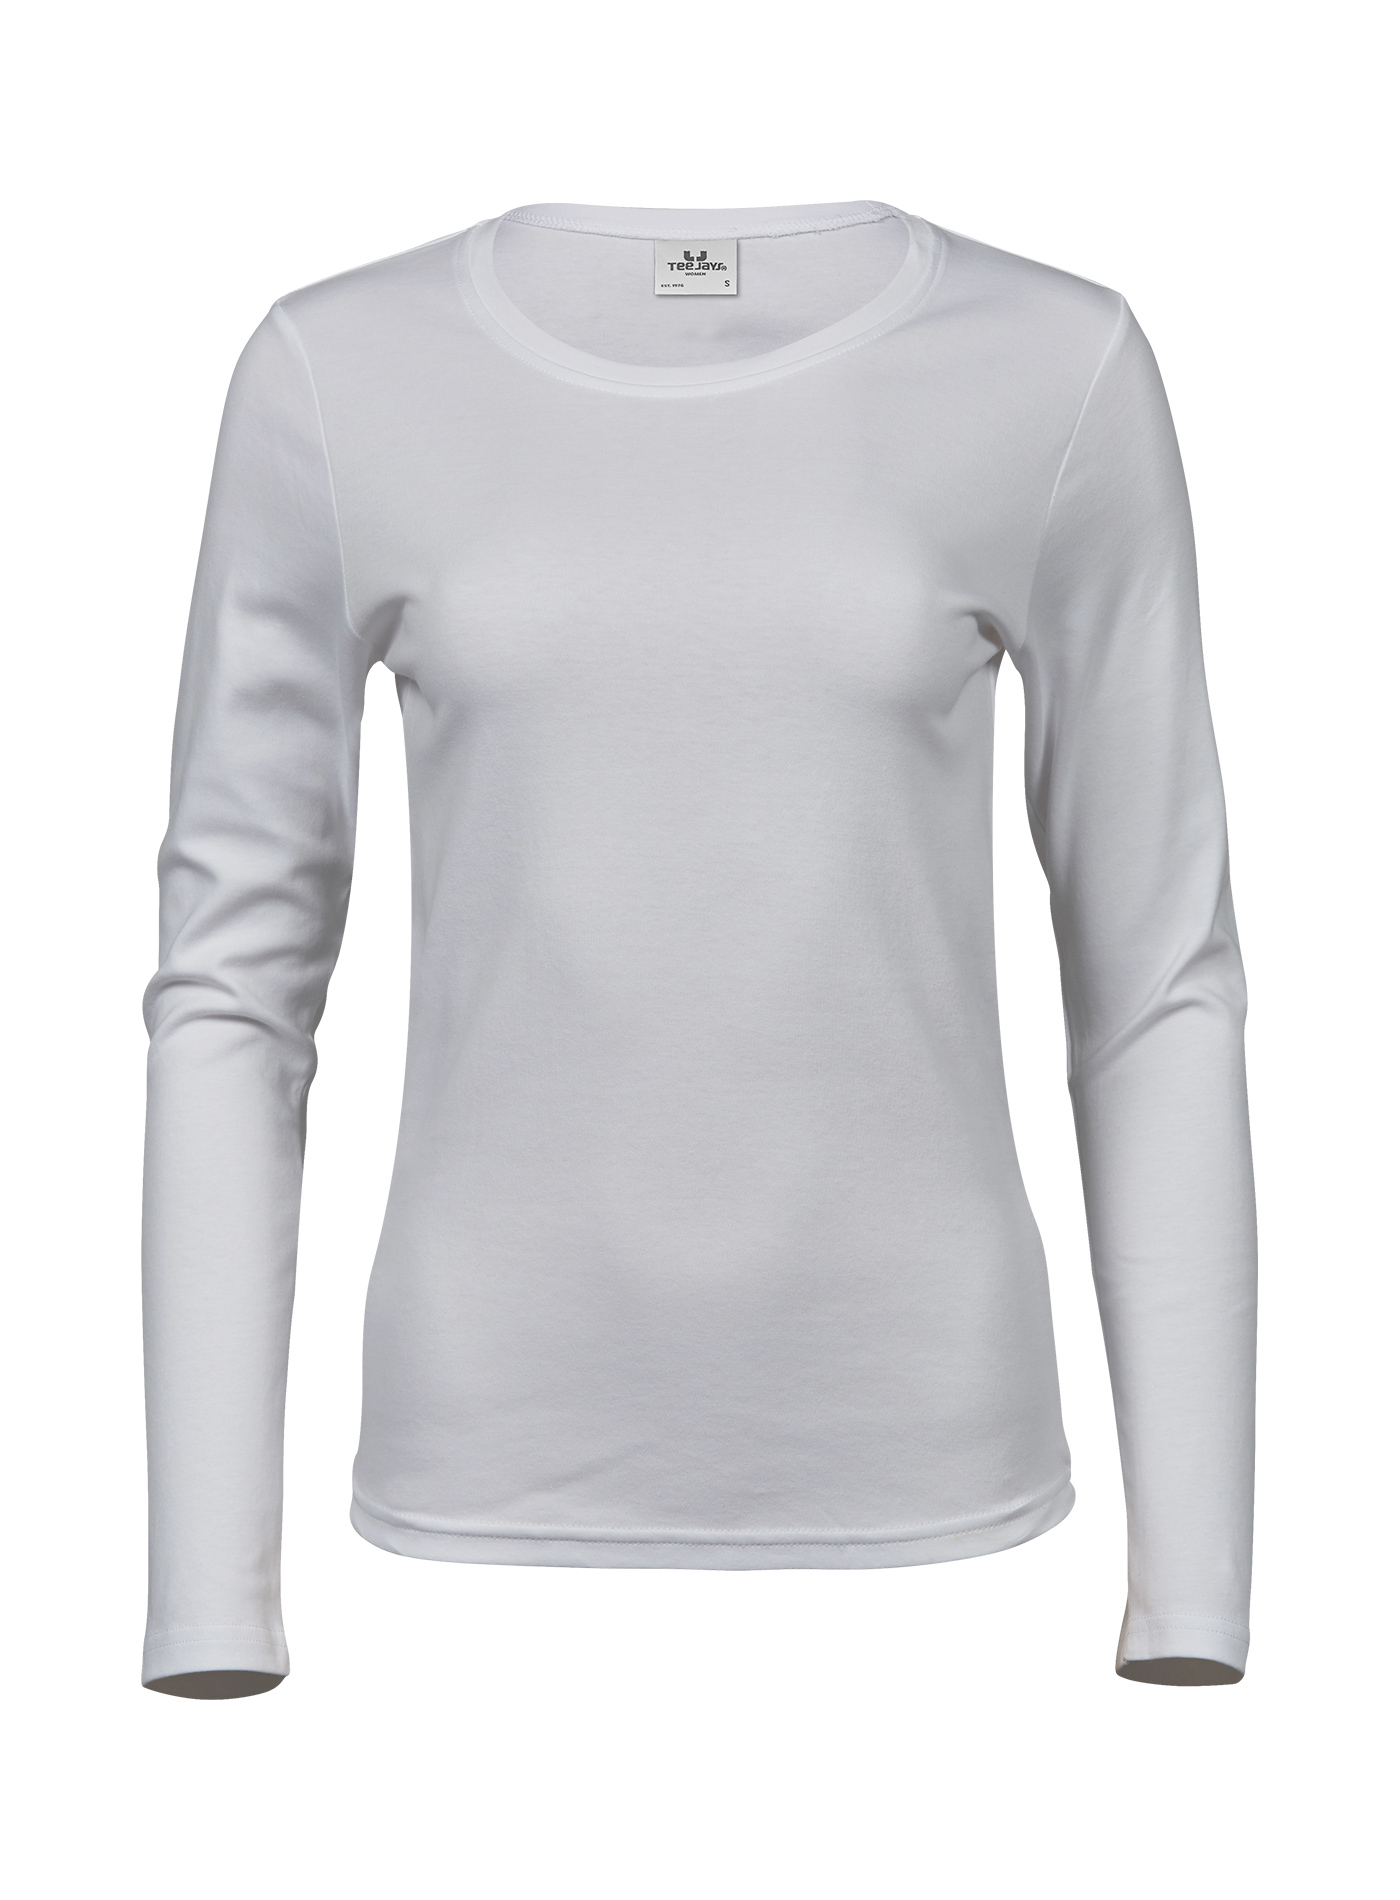 Dámské tričko s dlouhými rukávy Tee Jays Interlock - Bílá L